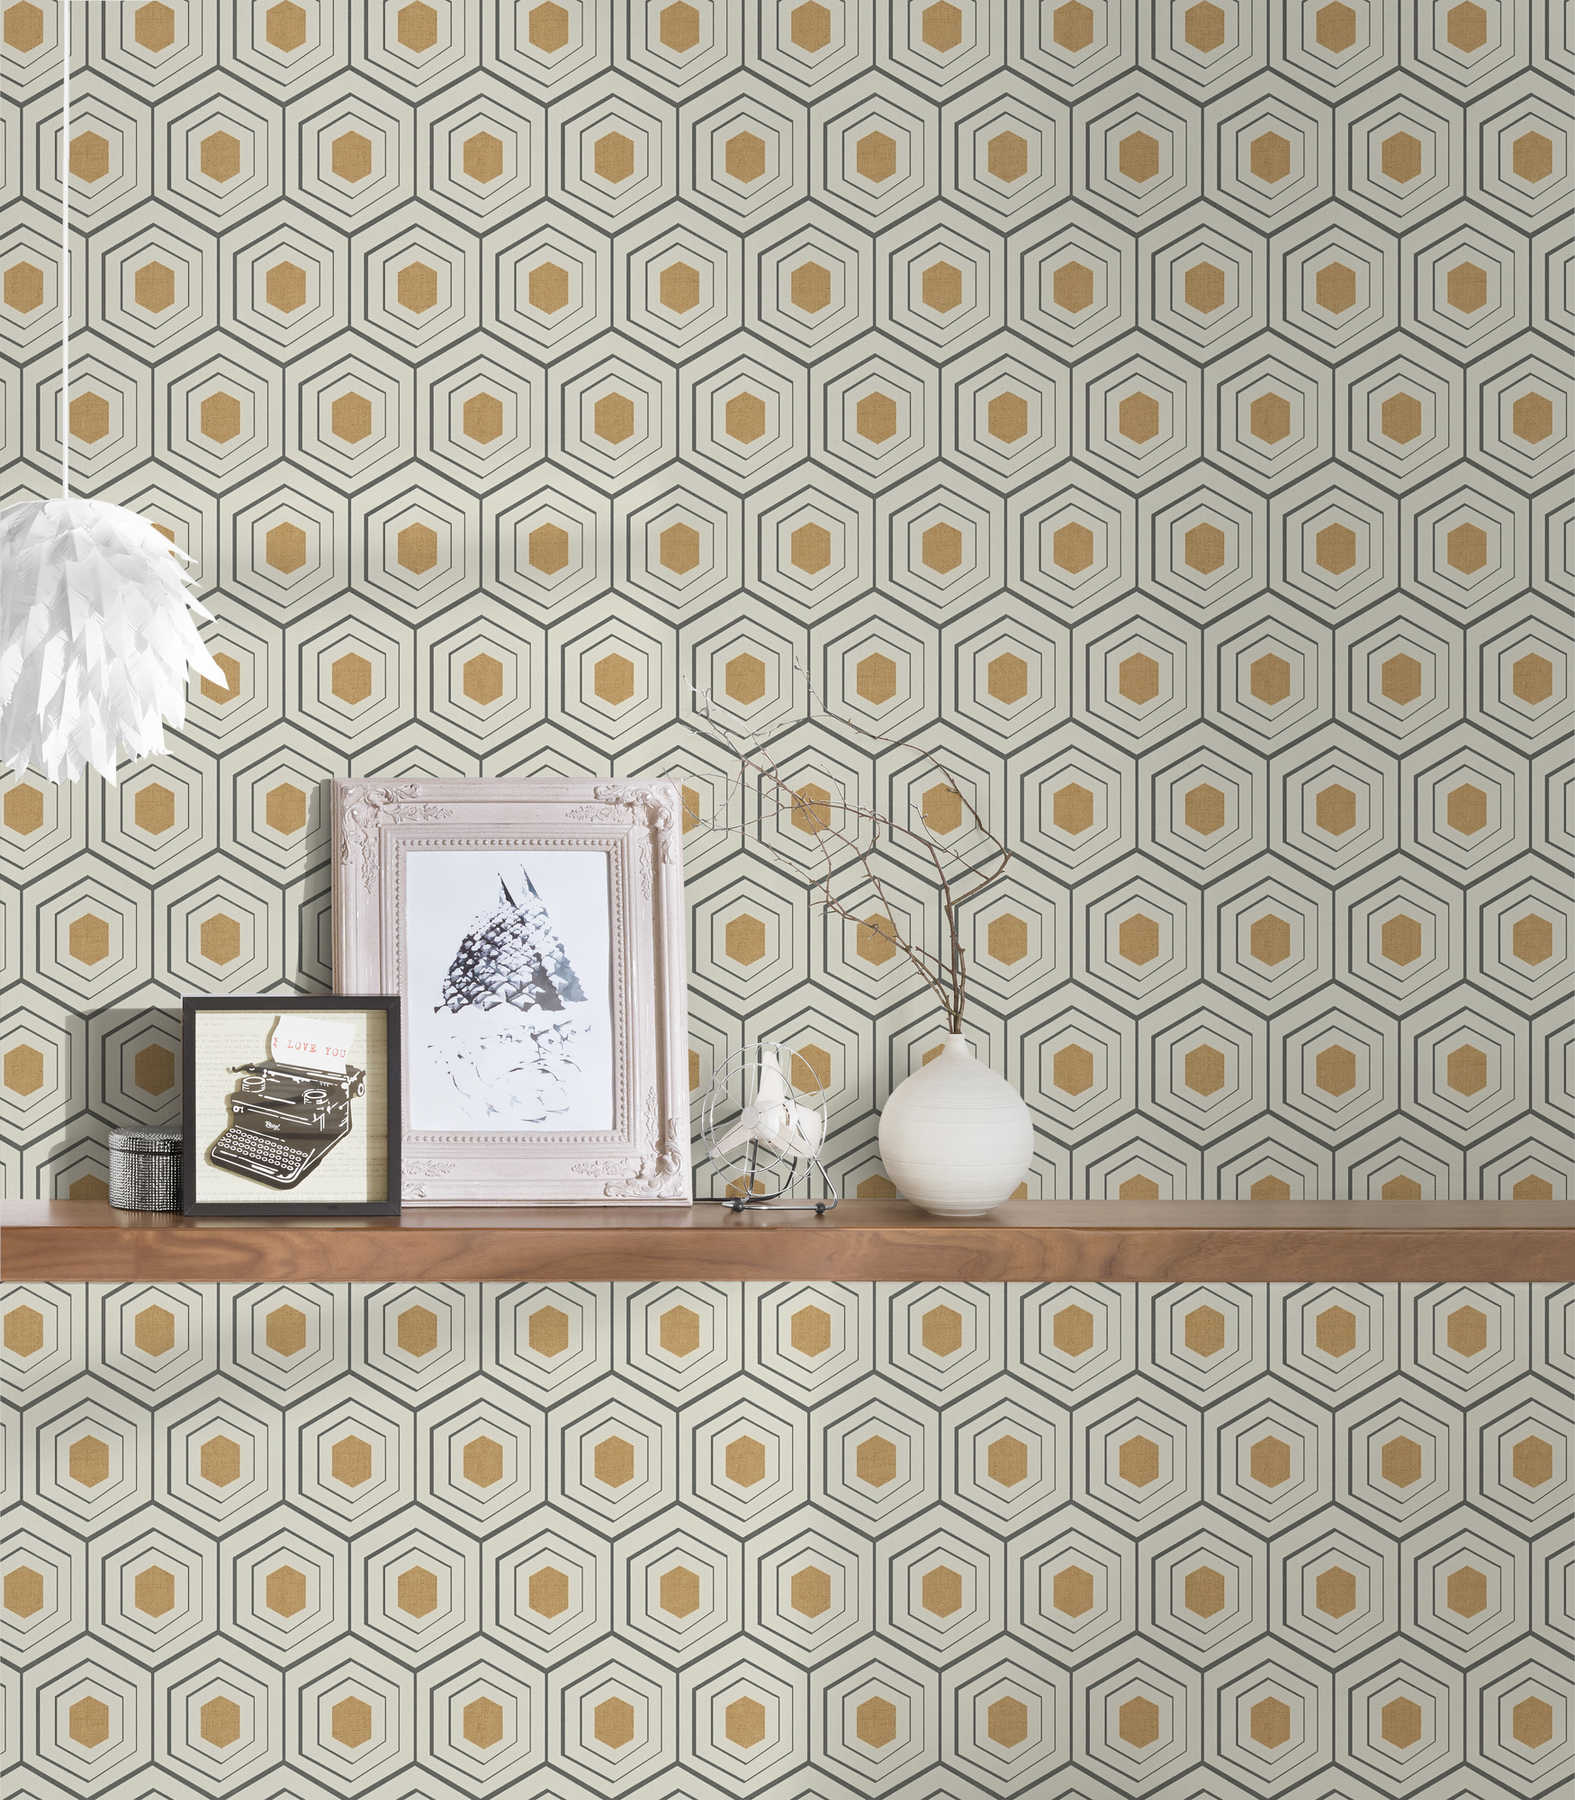             Retro wallpaper 50s honeycomb pattern & metallic accent - beige
        